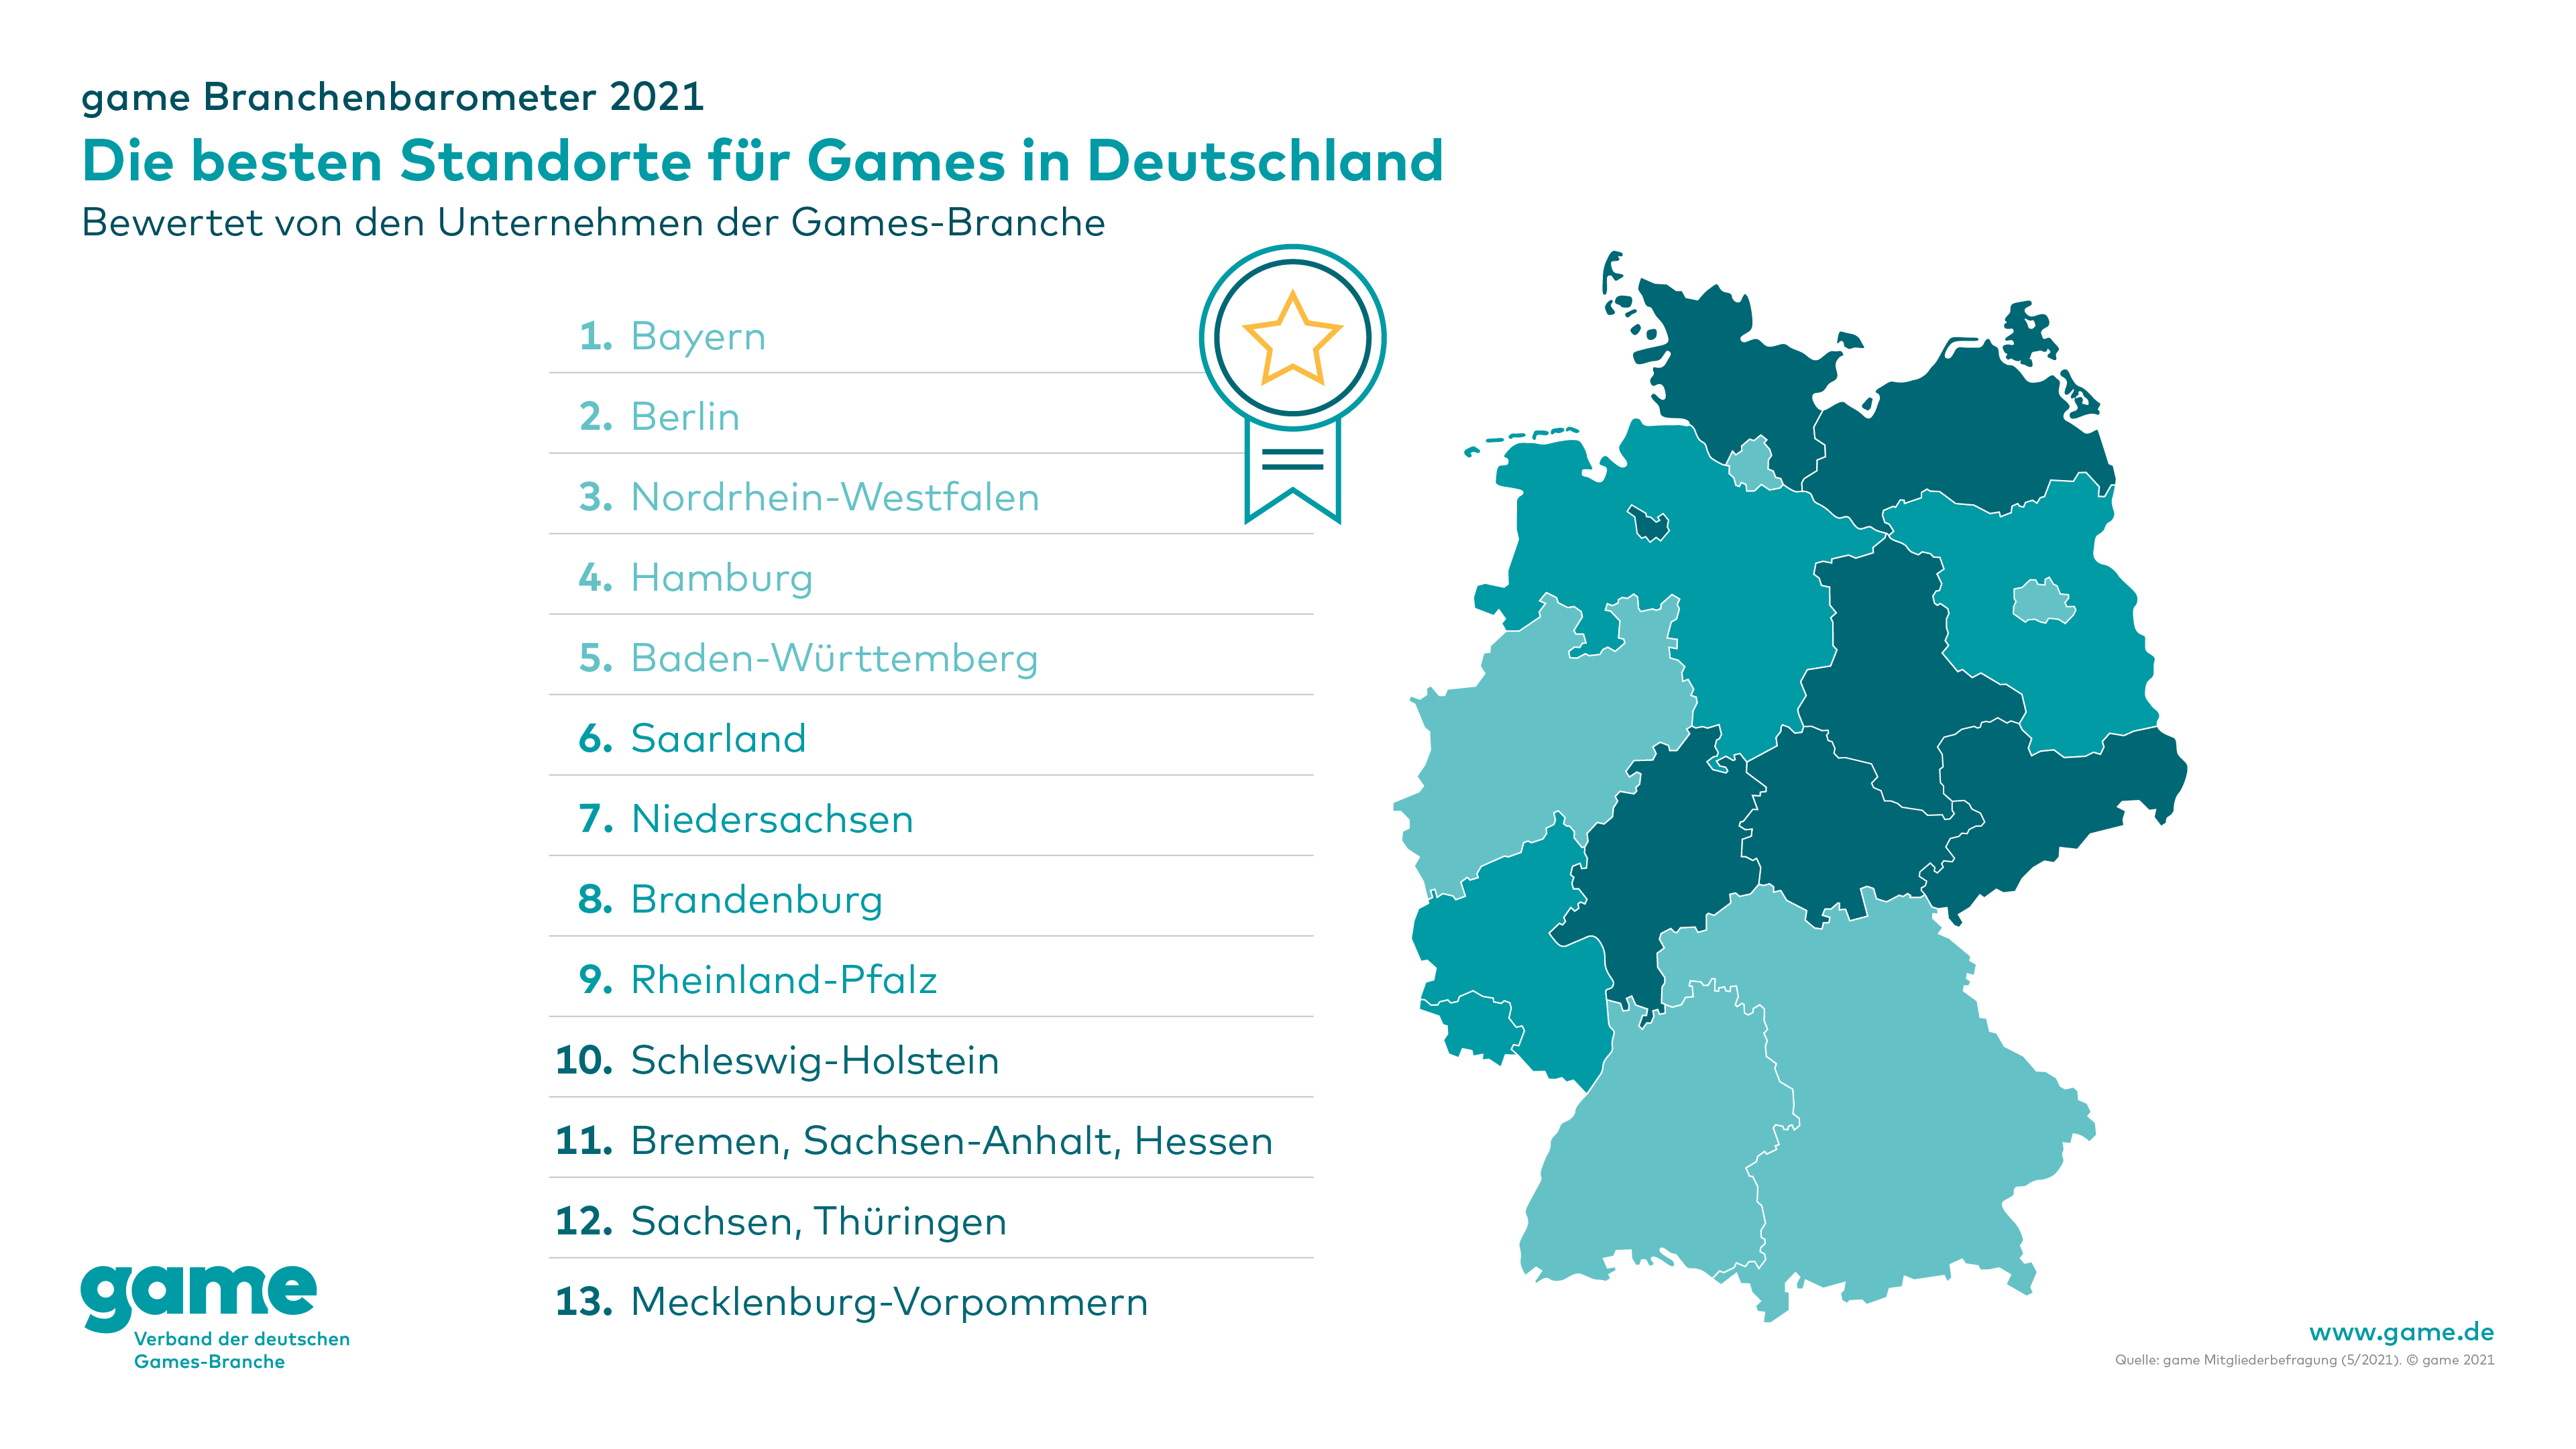 Die besten Games-Standorte für Games in Deutschland